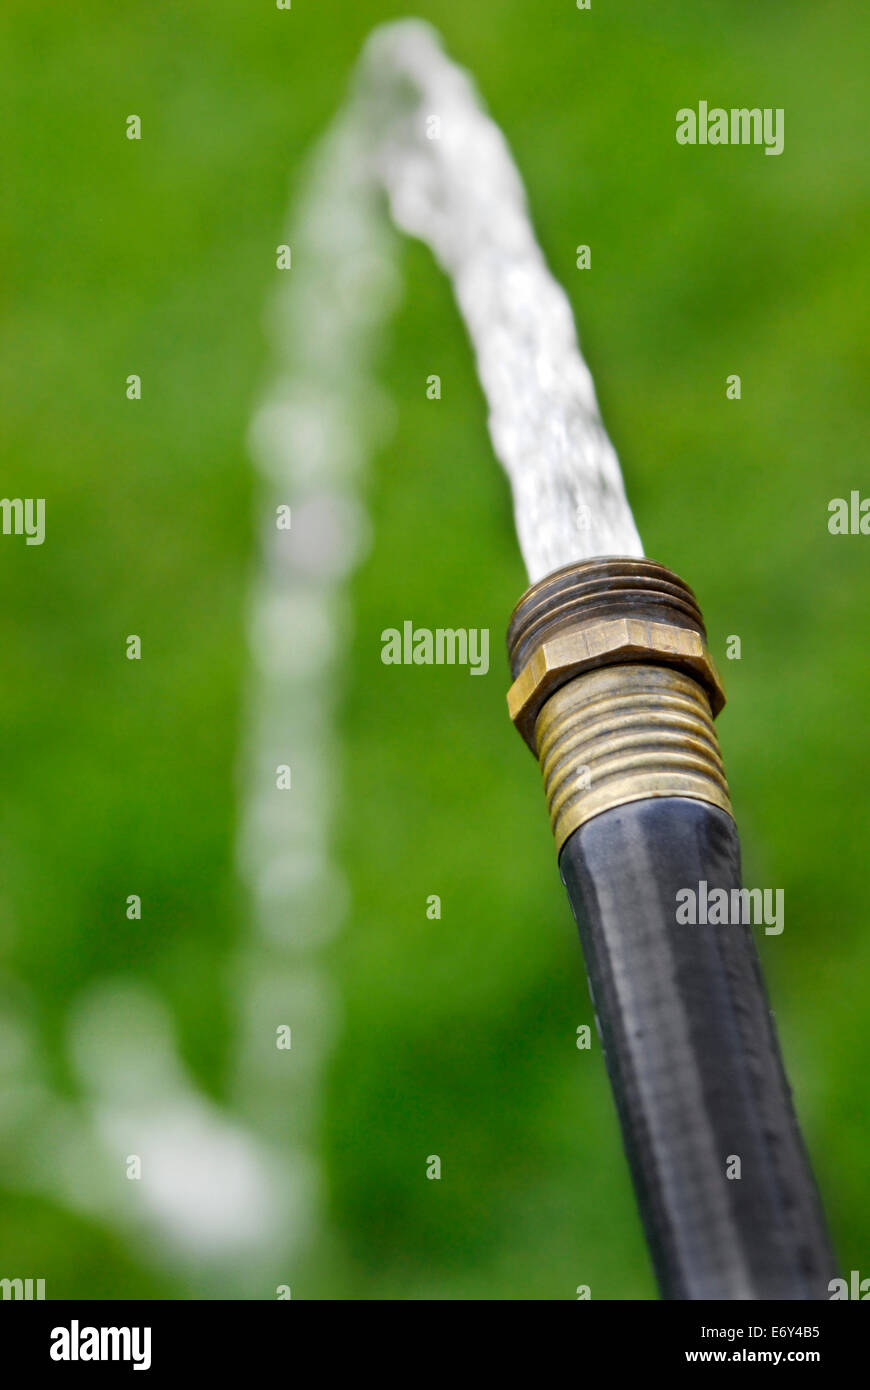 Dettaglio del tubo flessibile nero squirting riprese di acqua fresca sul verde prato Foto Stock